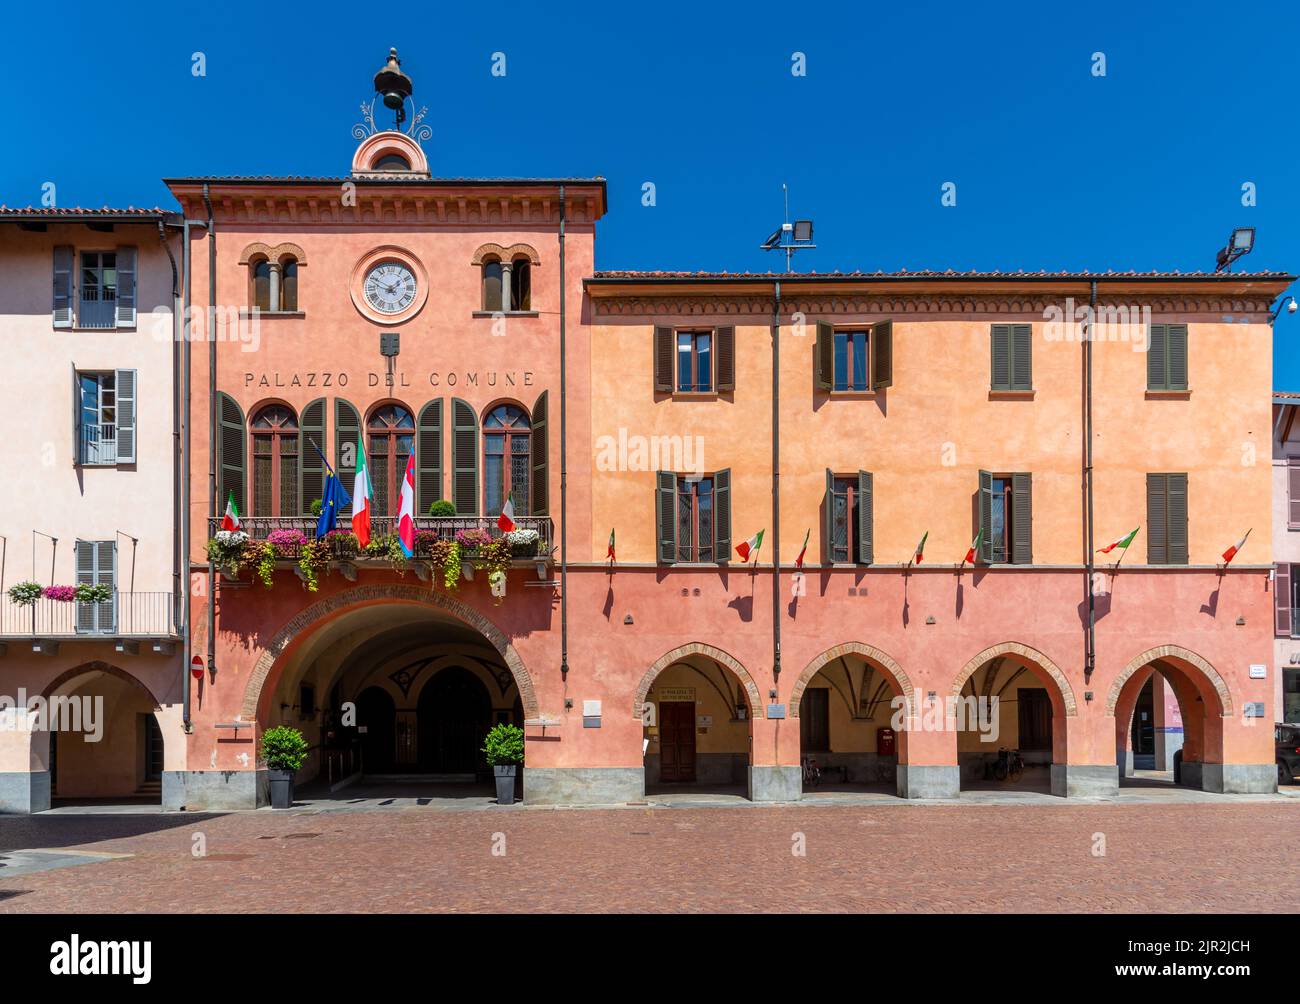 Alba, Langhe, Piemont, Italien - 16. August 2022: Das Rathaus von Alba mit den blühenden Balkonen und der italienischen Nationalflagge Stockfoto